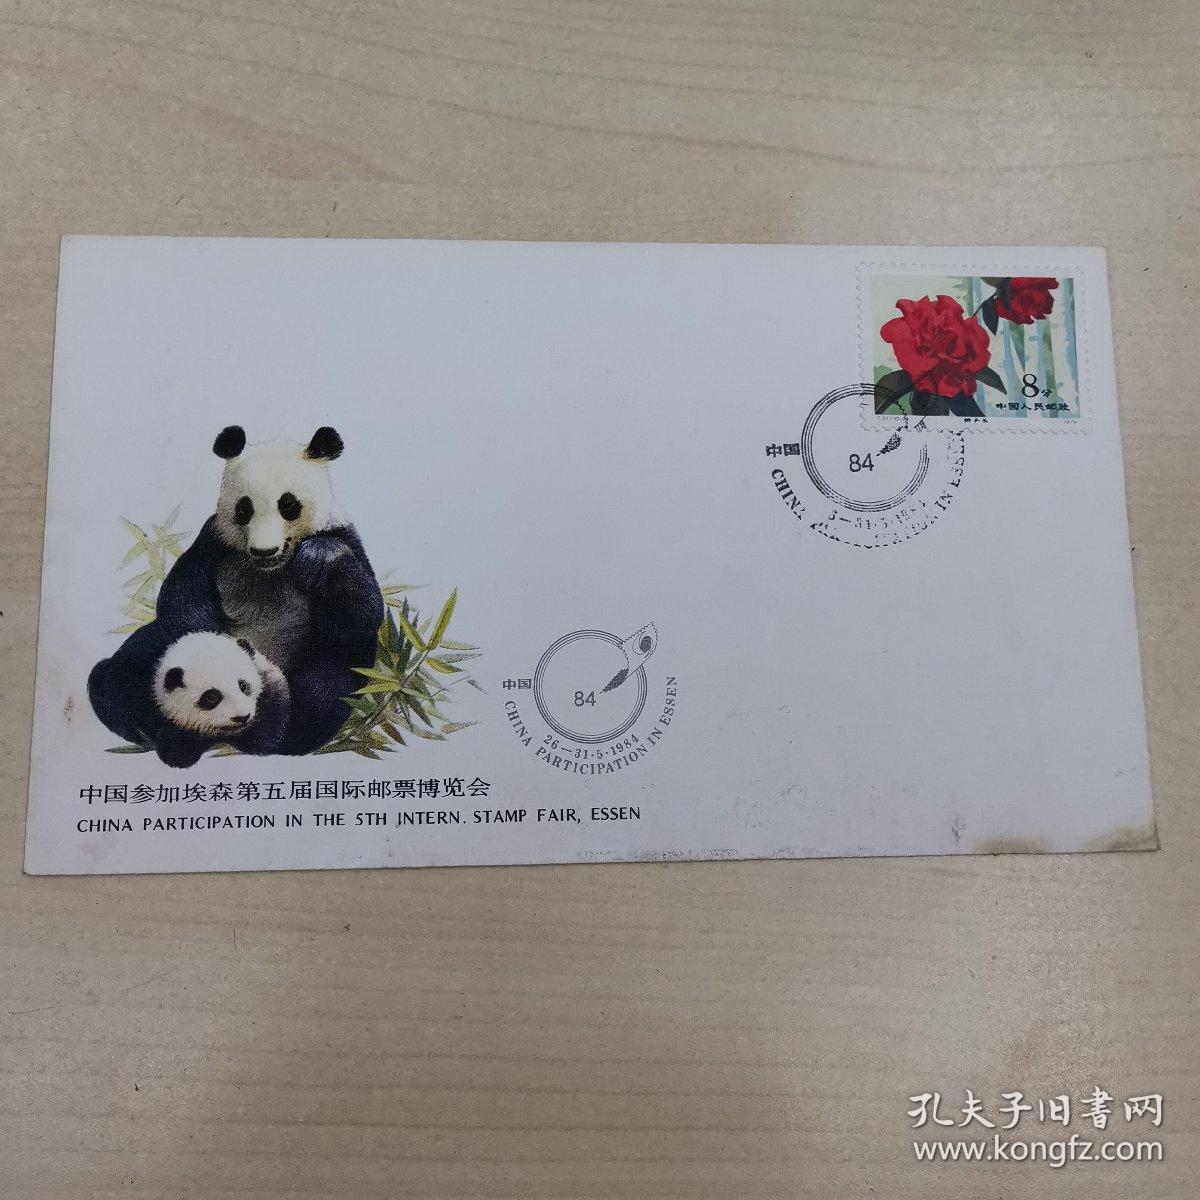 中国参加埃森第五届国际邮票博览会纪念封